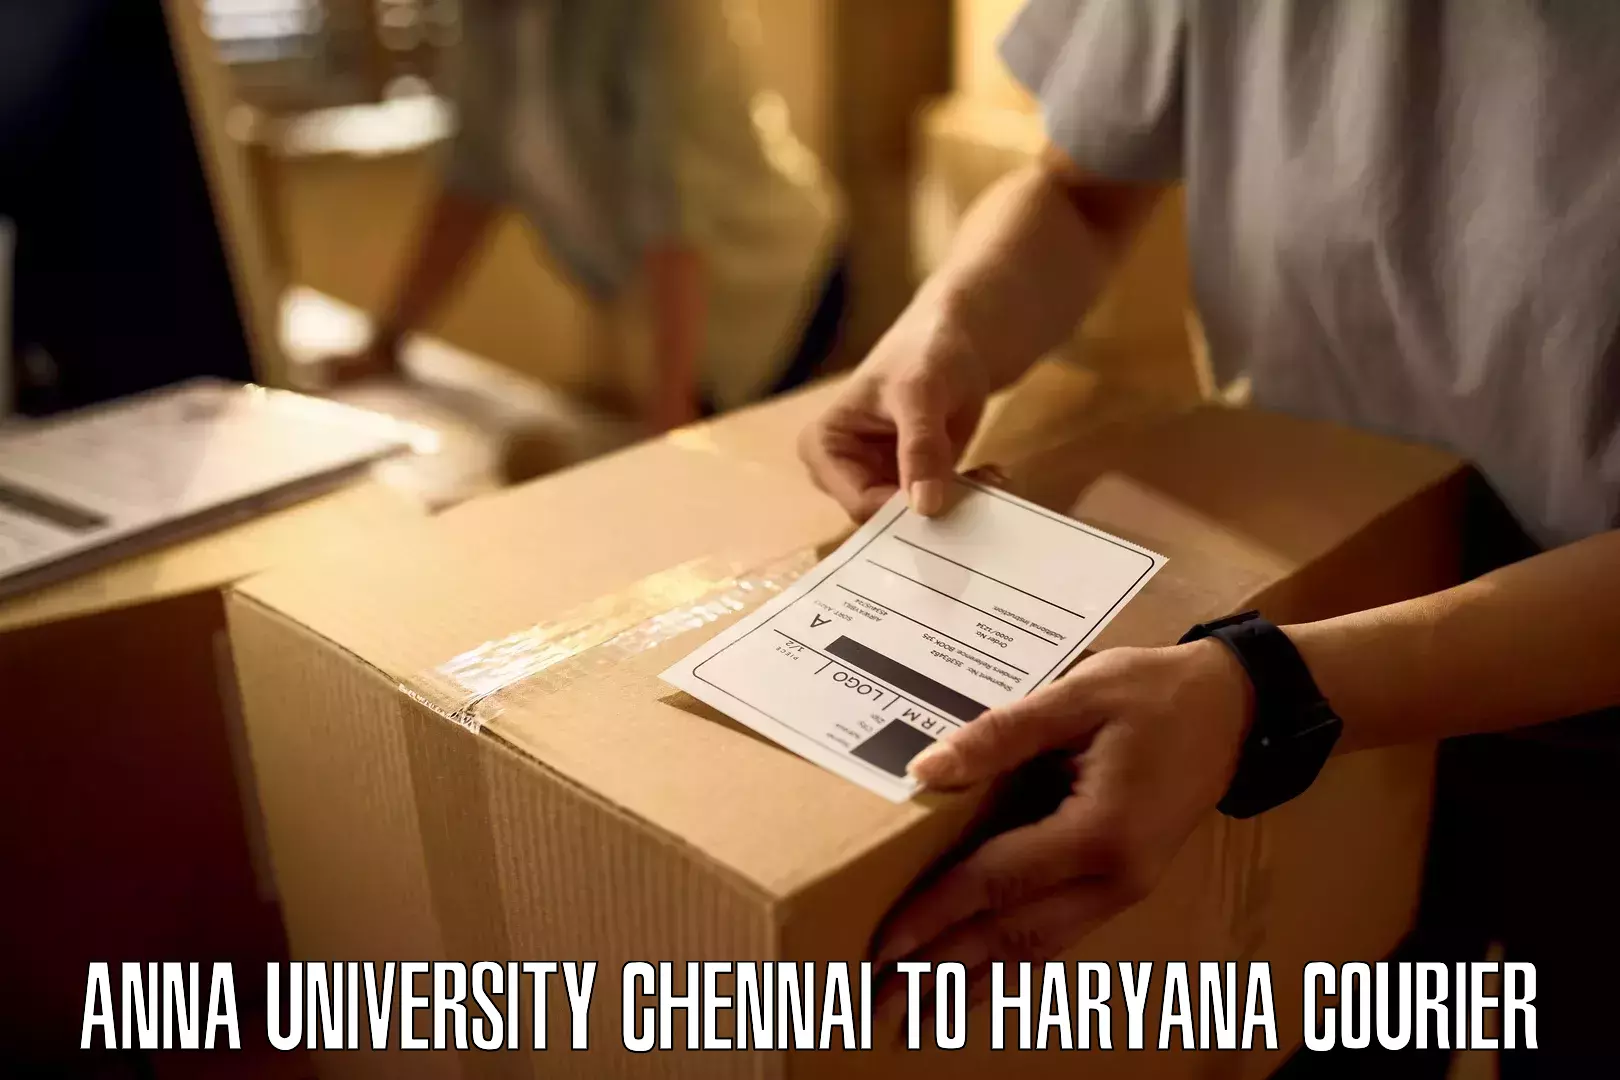 Lightweight courier Anna University Chennai to Kurukshetra